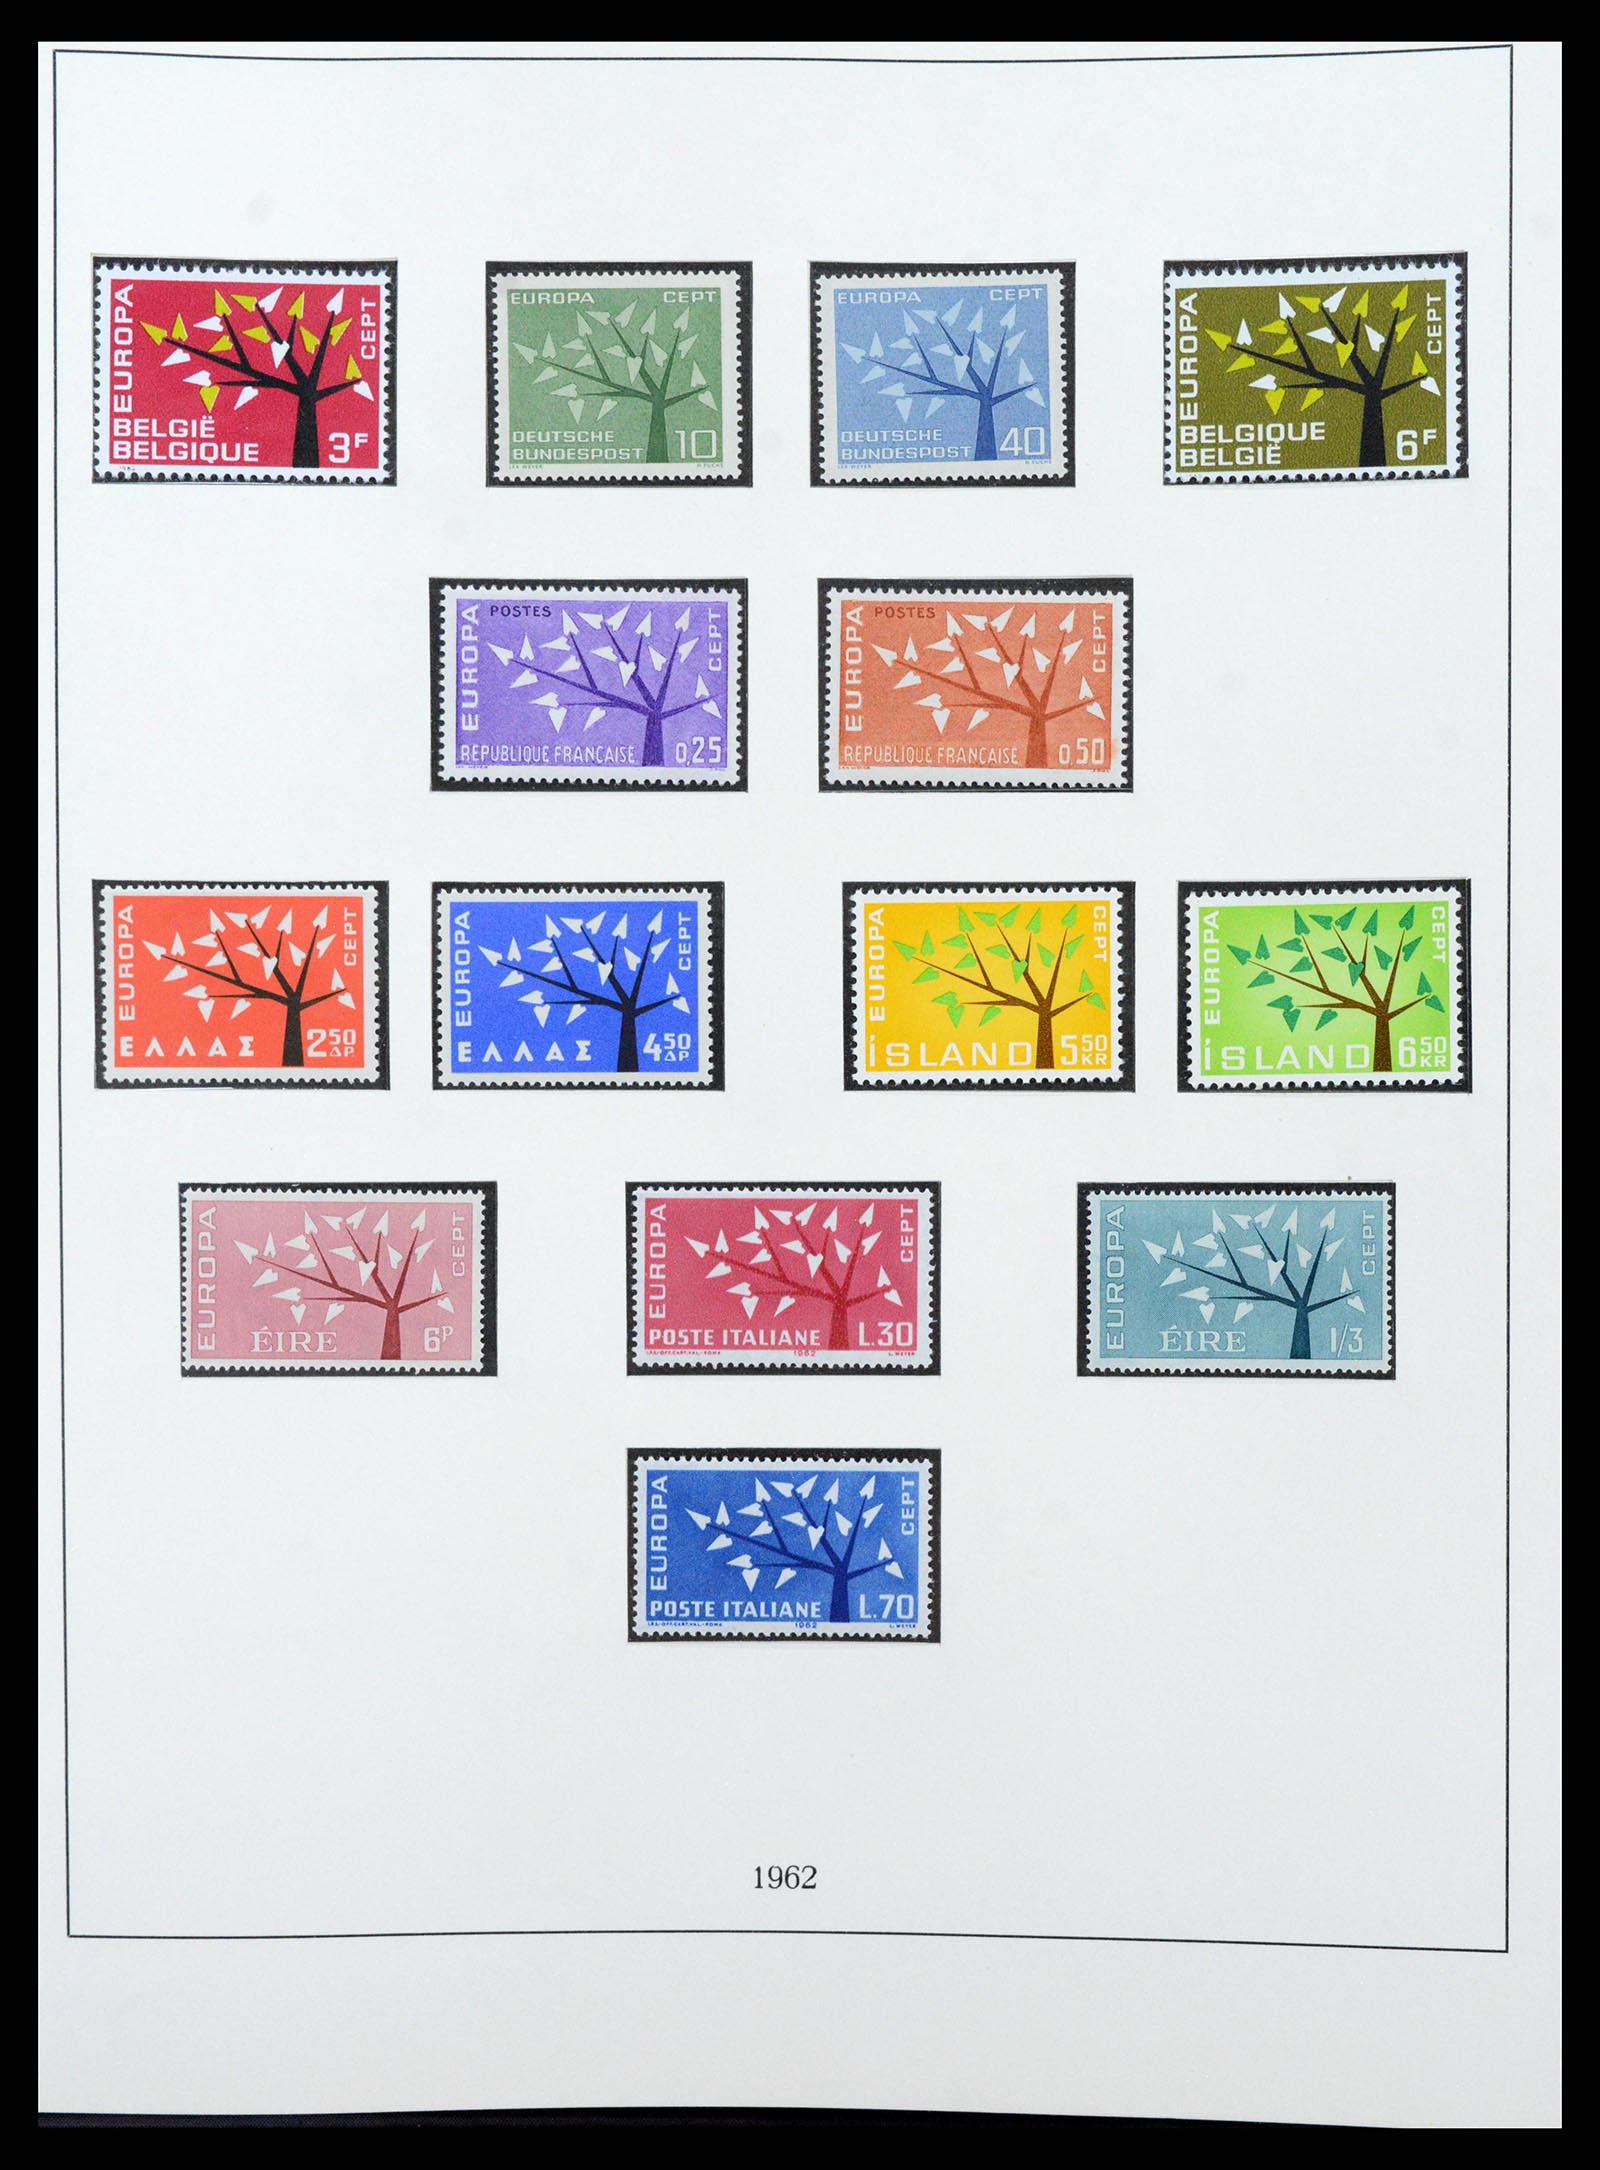 38216 0013 - Postzegelverzameling 38216 Europa Cept compleet 1956-2001.